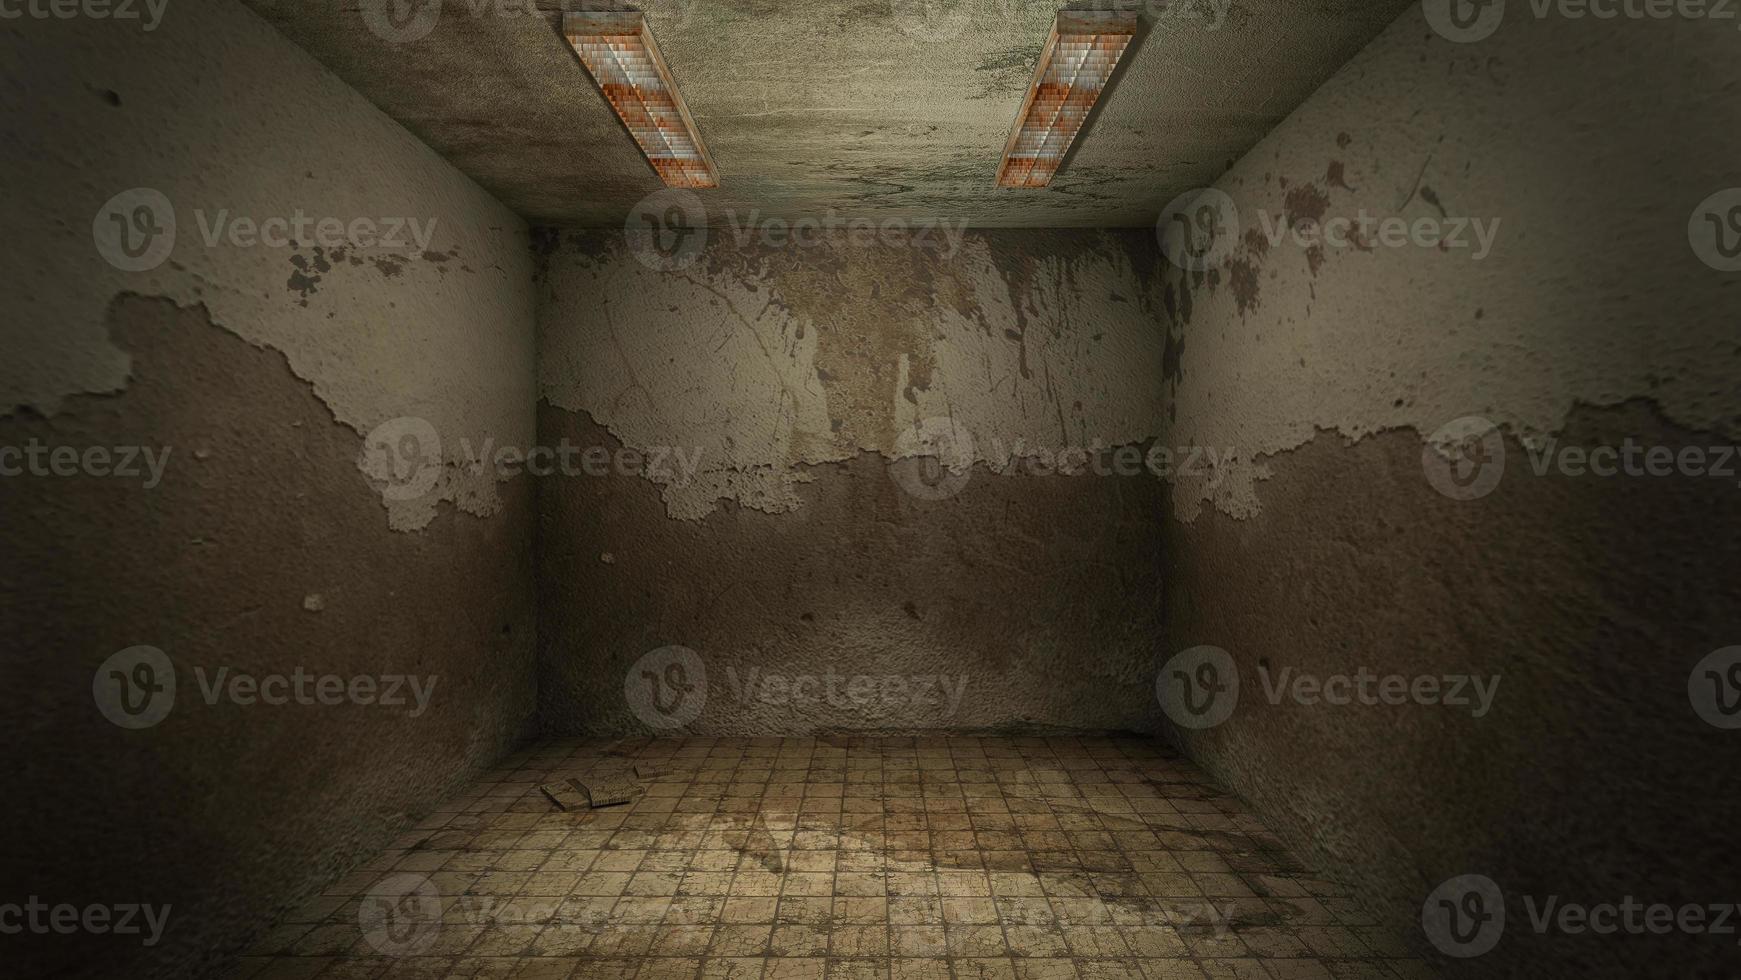 le design intérieur de l'horreur et de la pièce vide de dégâts effrayants., rendu 3d. photo